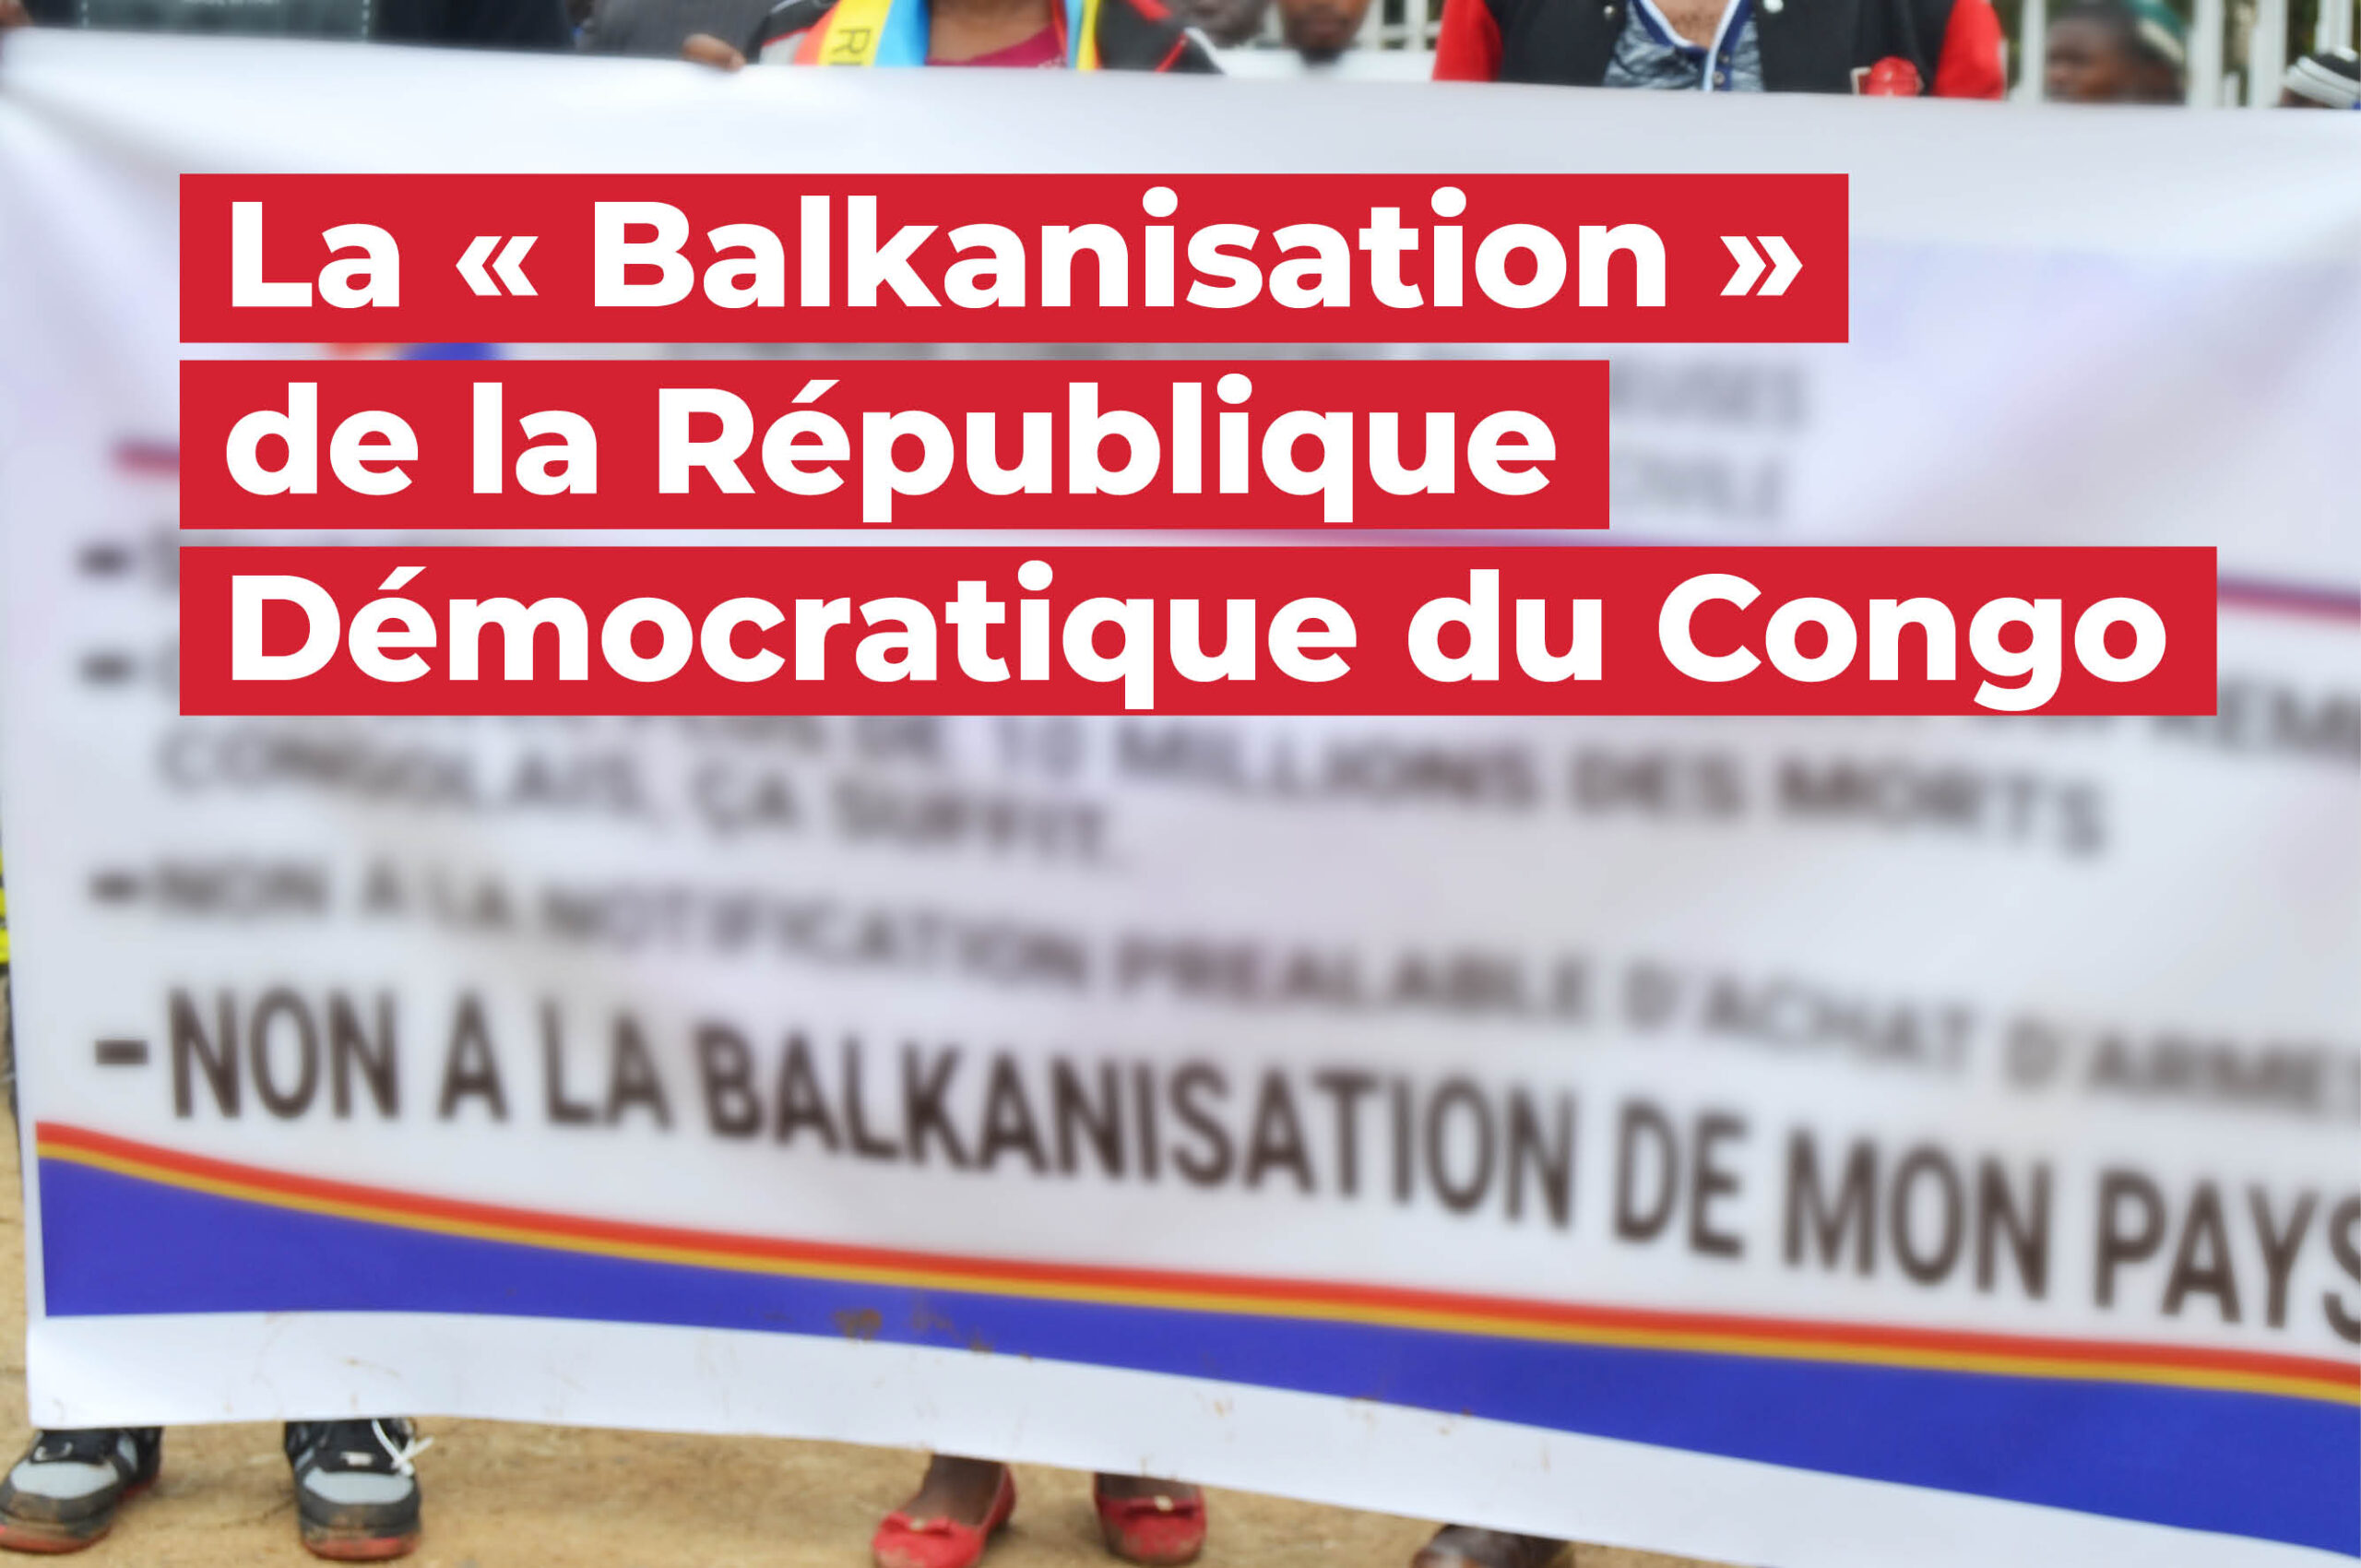 16_GIC_La « Balkanisation » de la République Démocratique du Congo_2